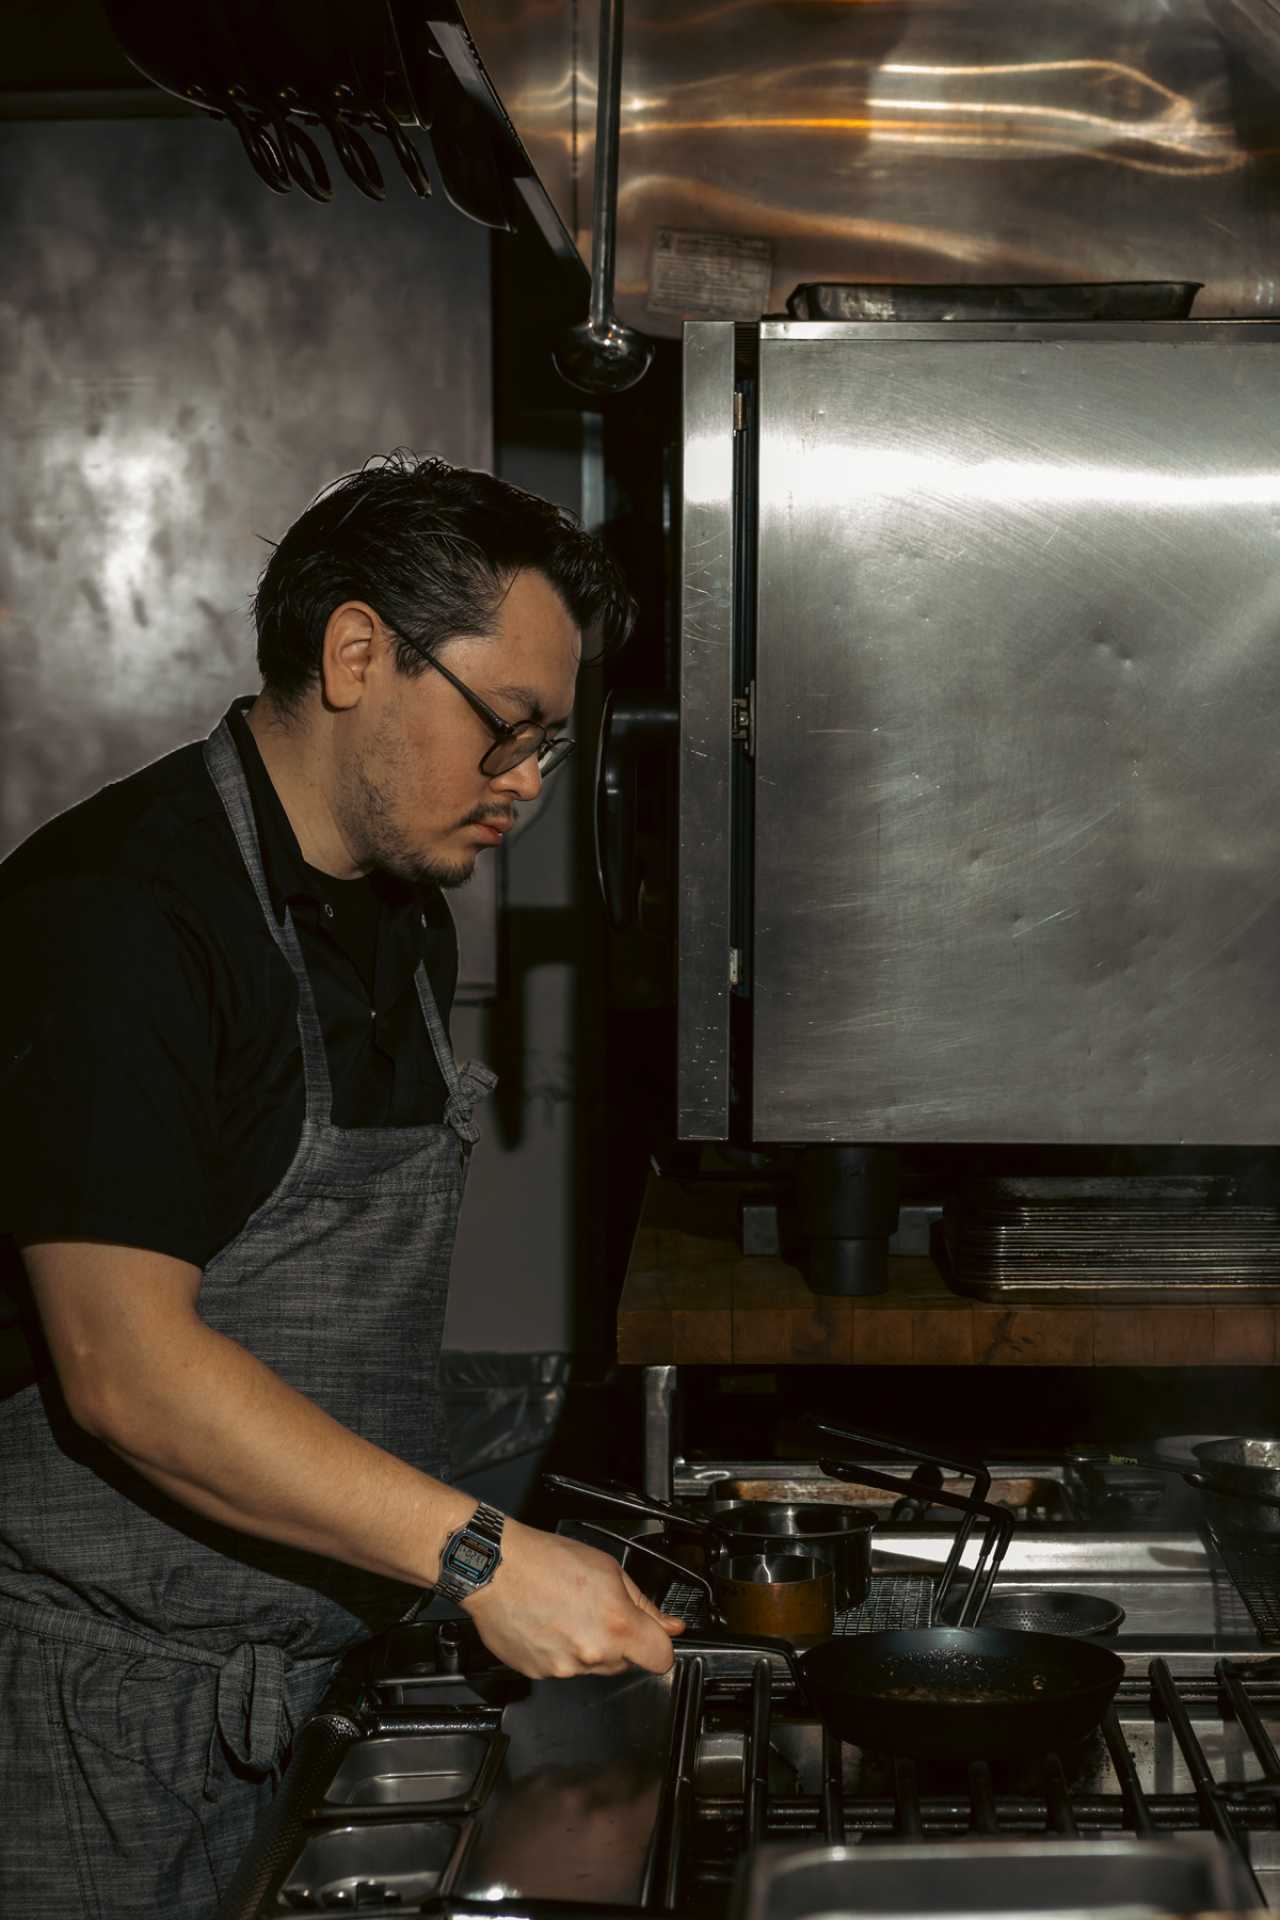 Ficoa | Chef Quintero cooks at Little Italy's Ficoa